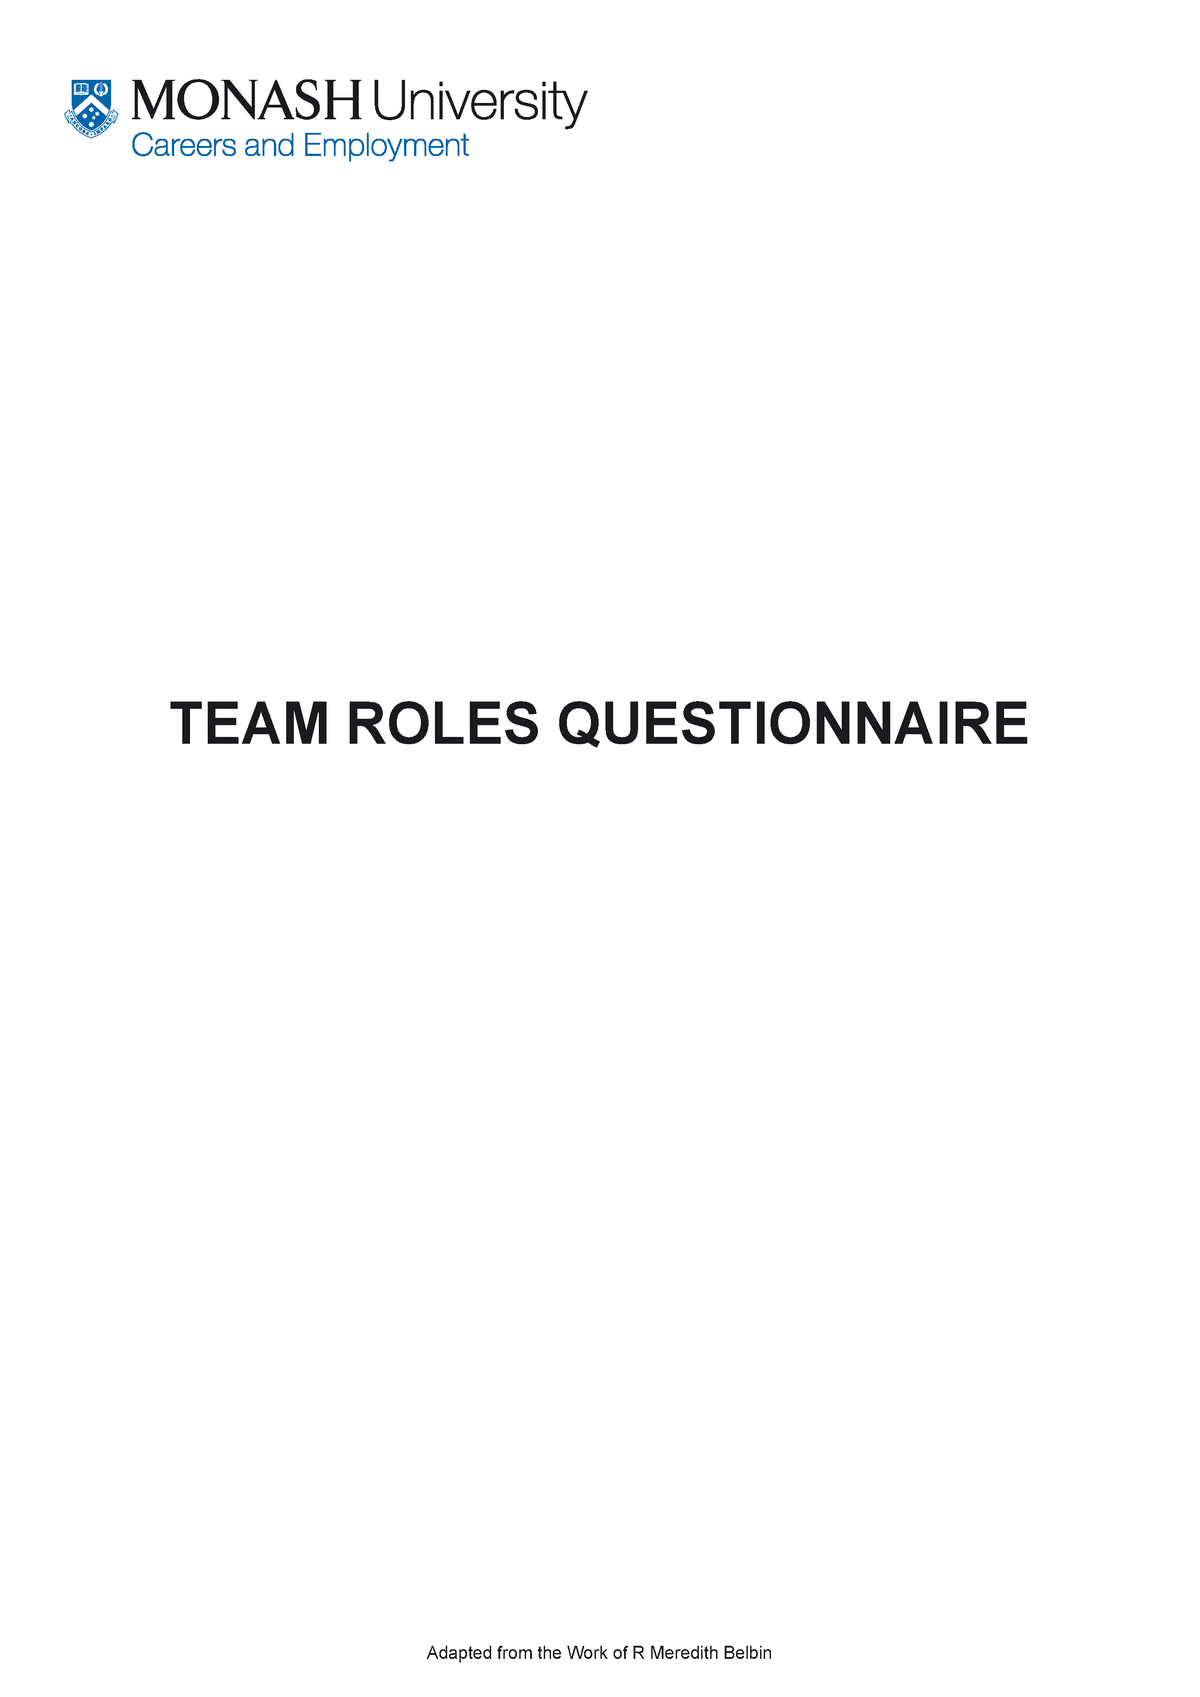 belbin team roles questionnaire